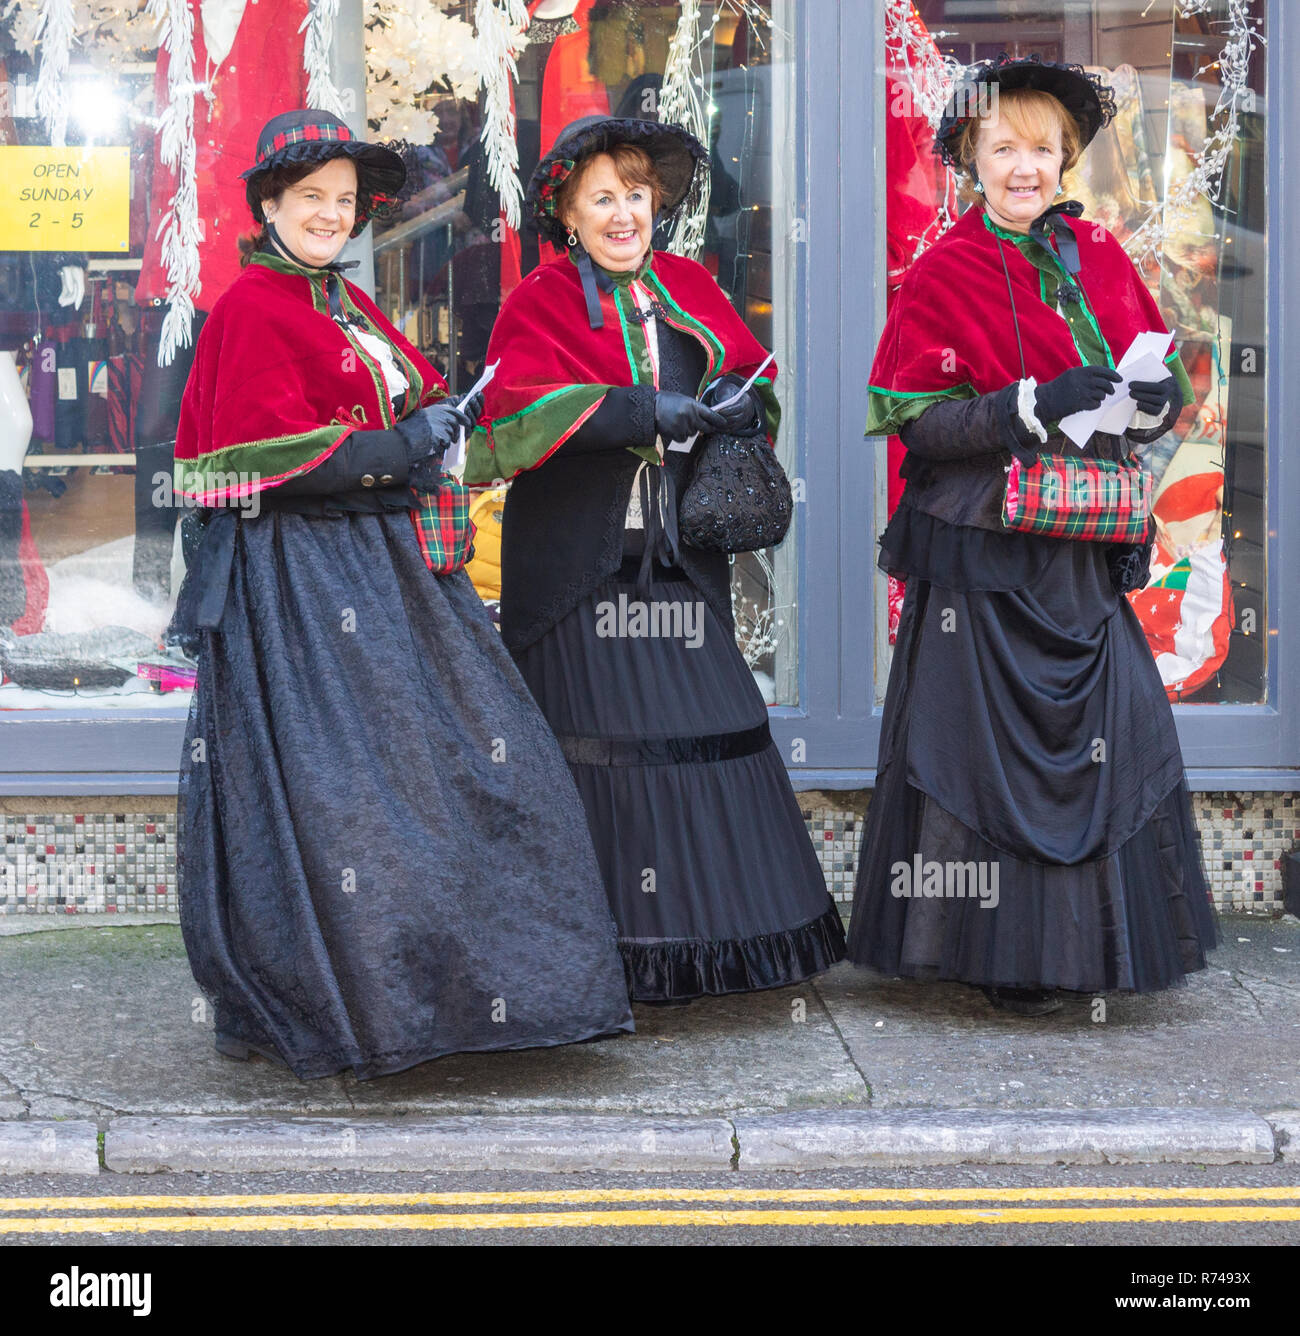 Onorevoli colleghe nel periodo Vittoriano dress shopping di Natale. Foto Stock